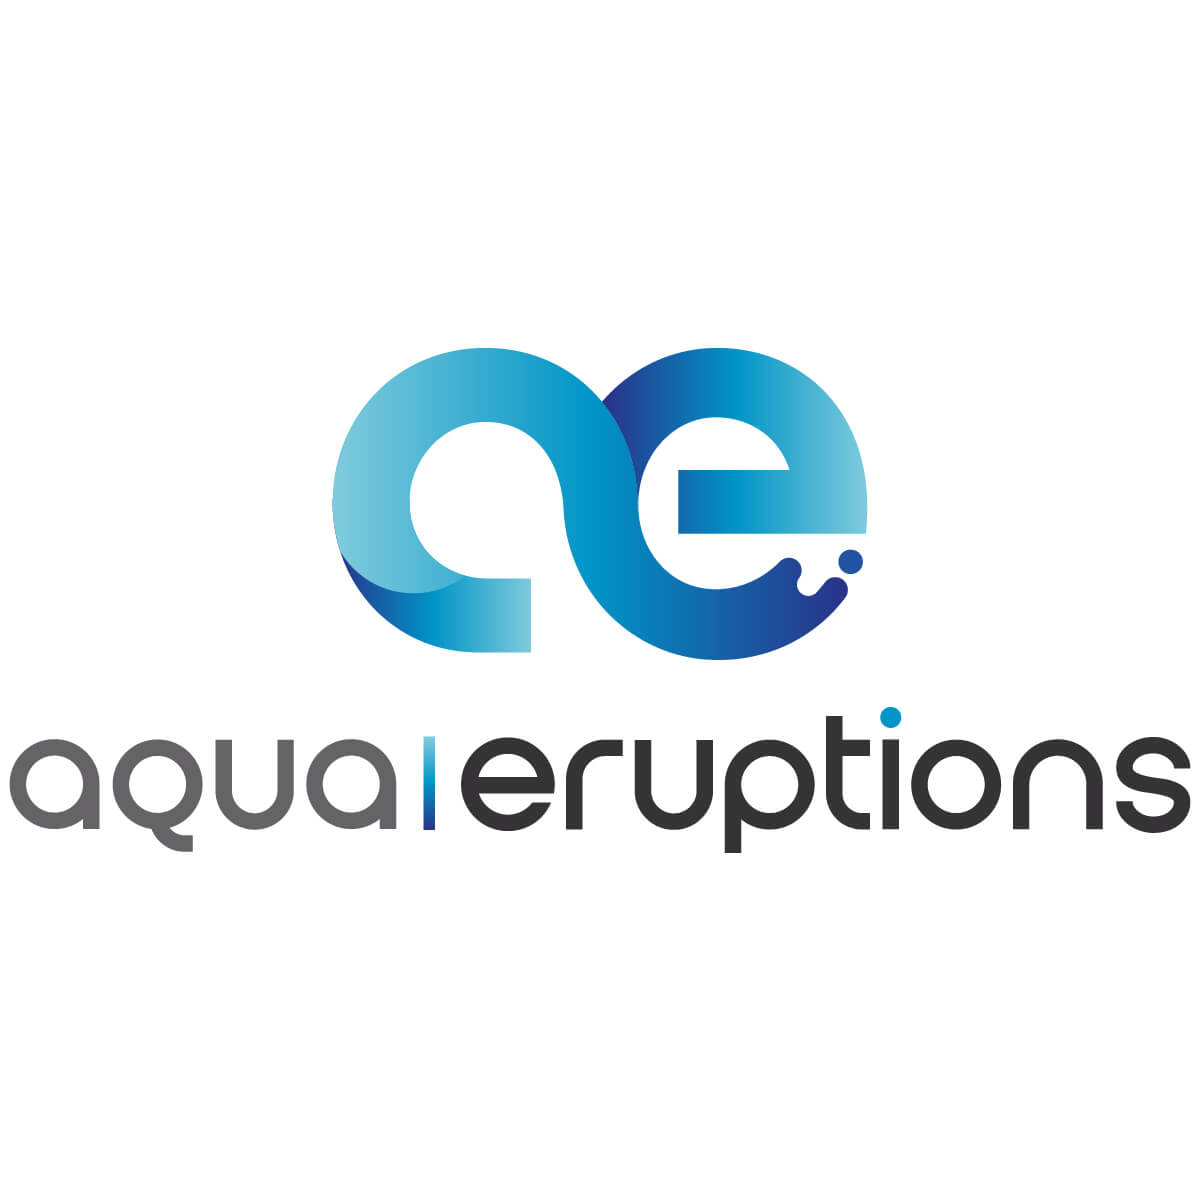 com-commerce_logo-aqua-eruptions